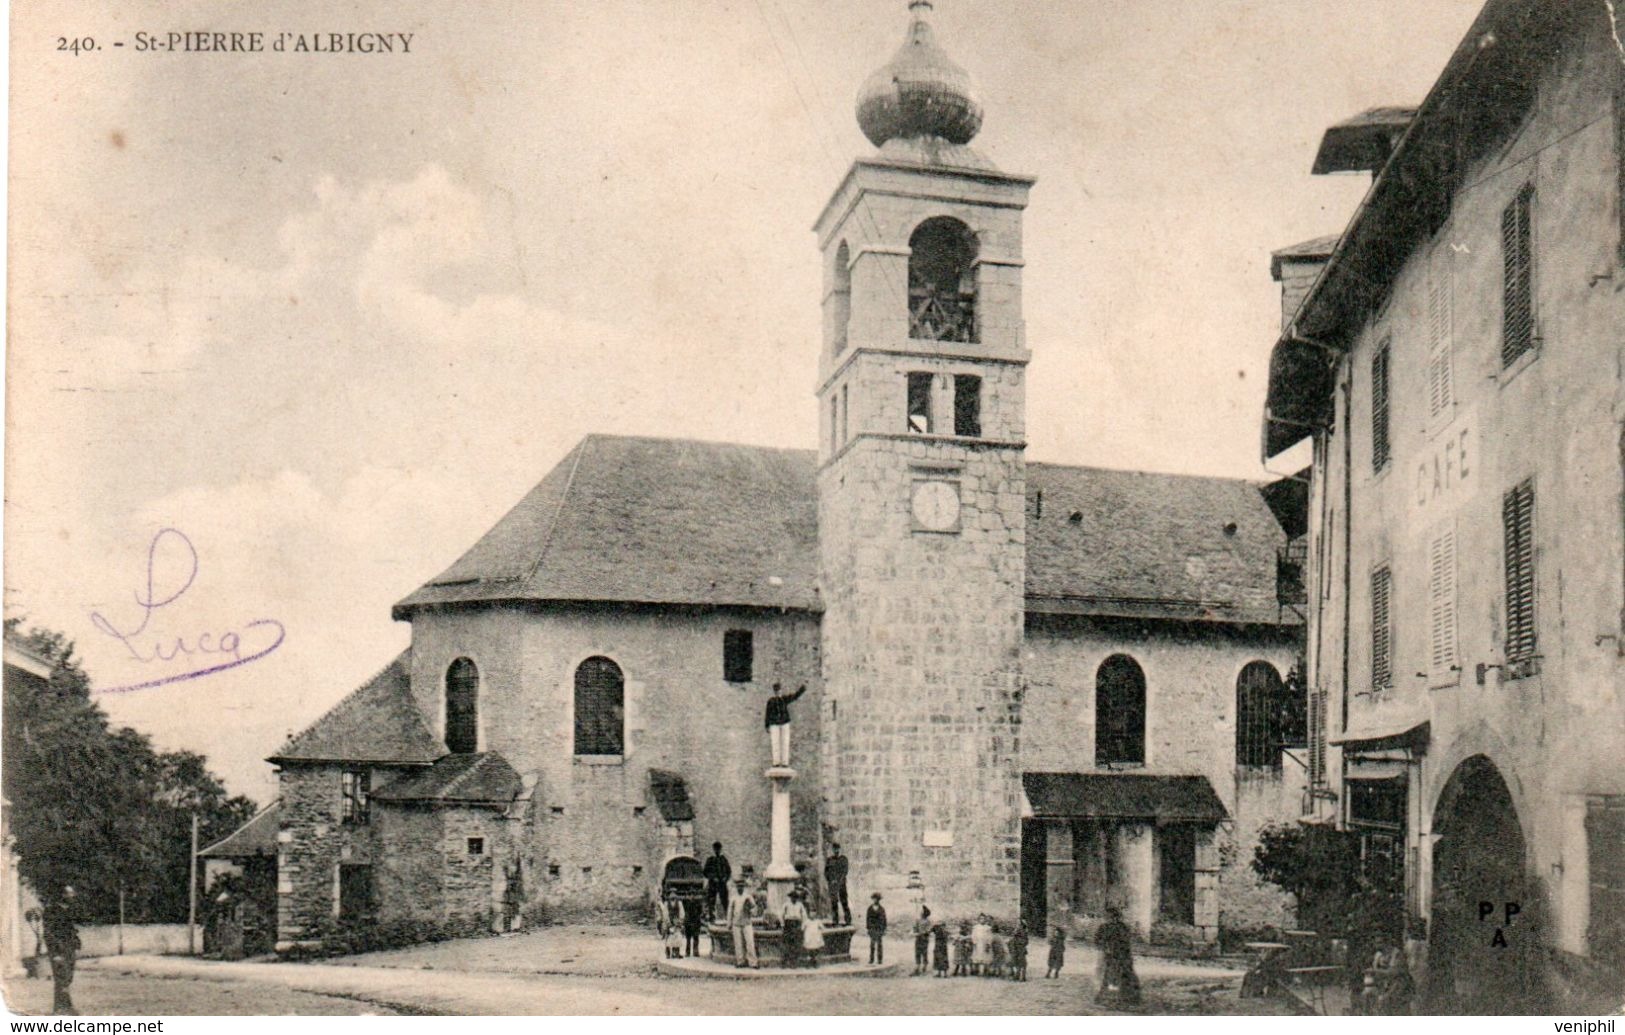 CARTE - ST PIERRE D'ALBIGNY -SAVOIE - L'EGLISE- ANNEE 1904 - Saint Pierre D'Albigny